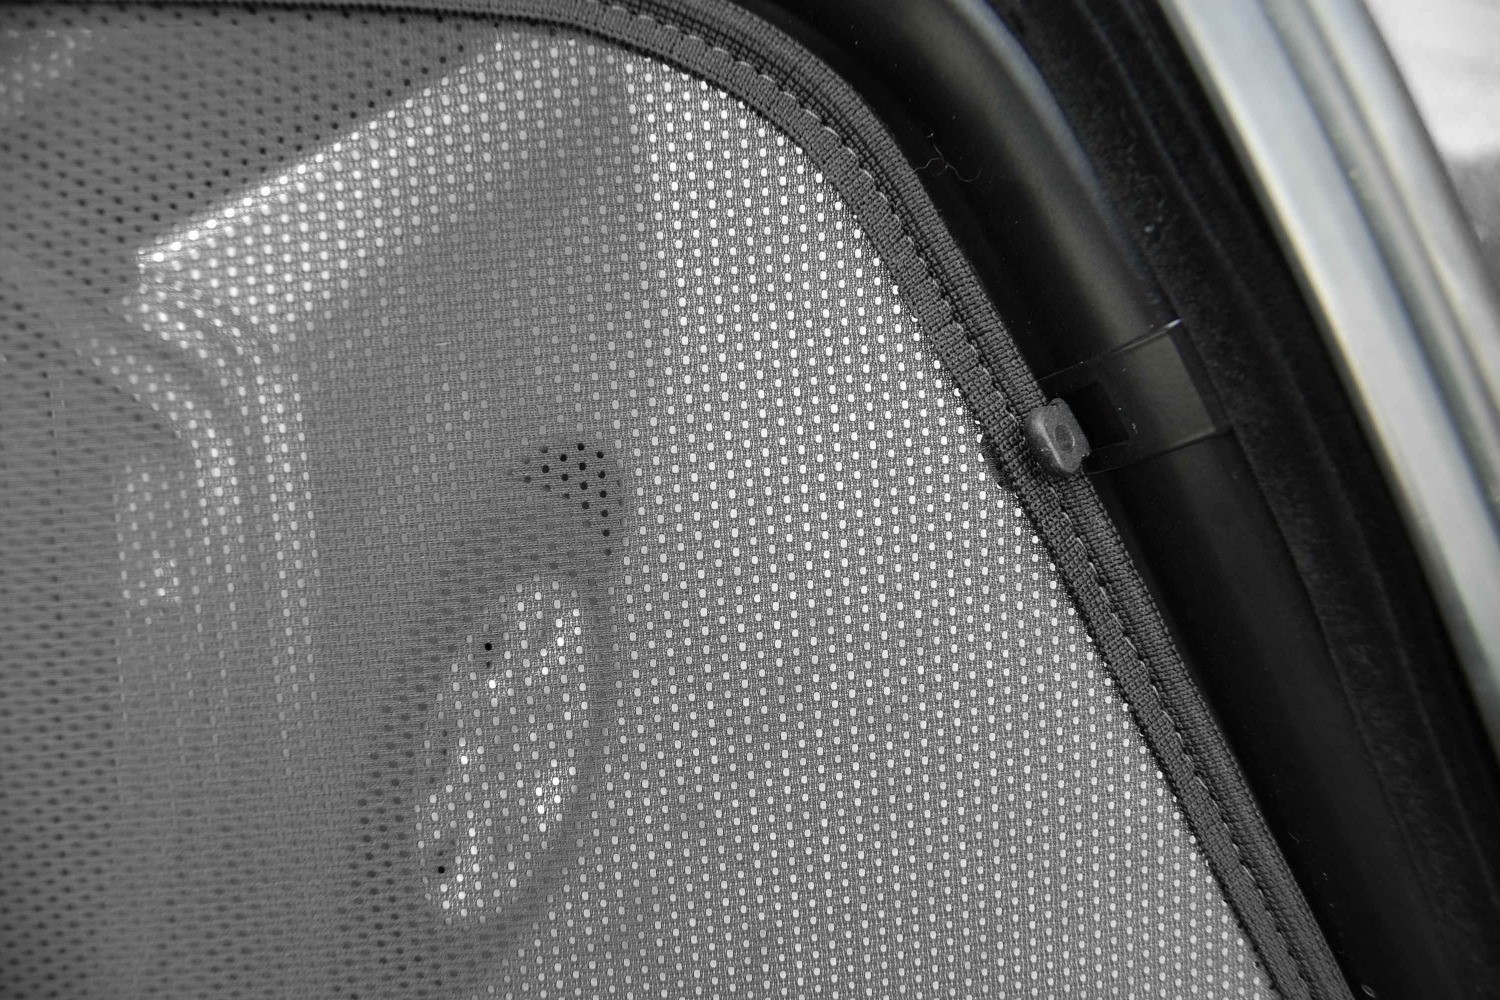 Sonnenschutz für Audi A6 Limousine: 100% passgenauer Sonniboy